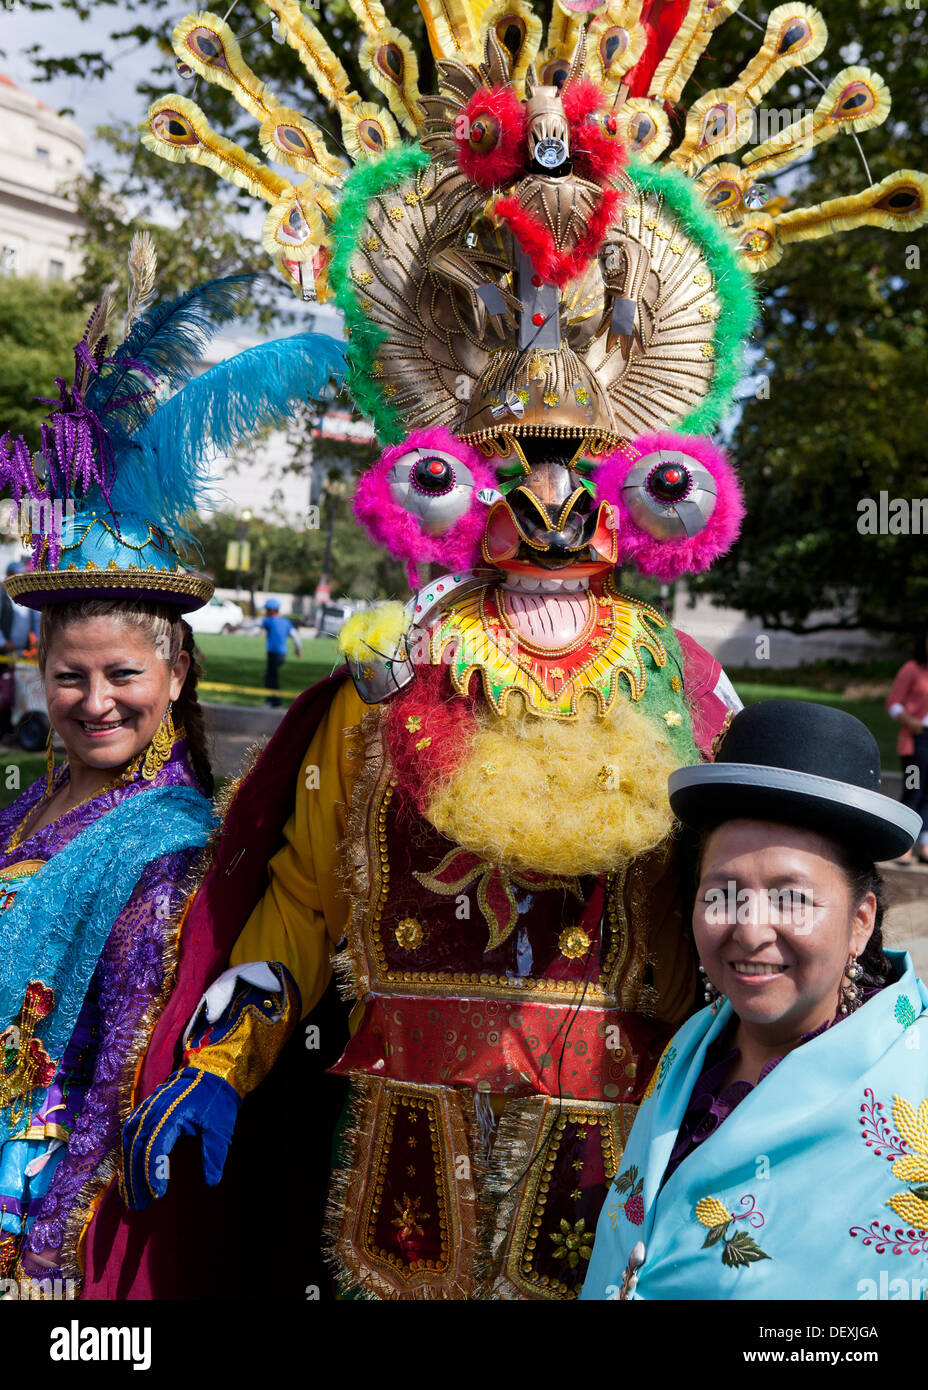 Traditionellen bolivianischen Tänzer in Tracht auf Latino Festival - Washington, DC USA Stockfoto